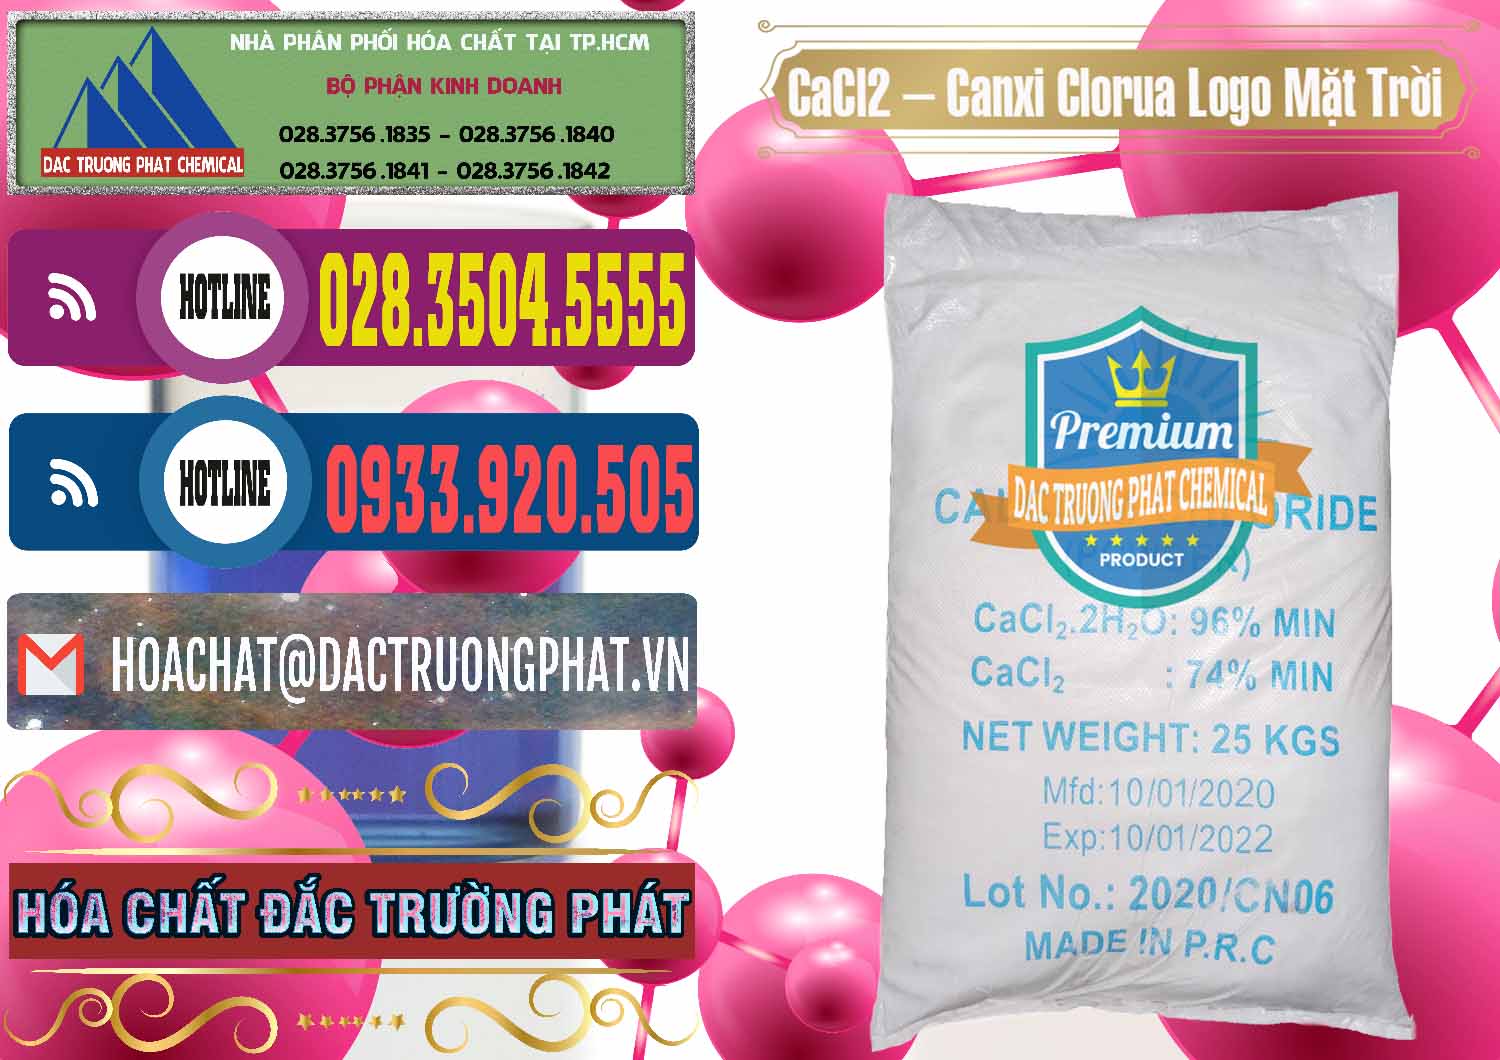 Đơn vị nhập khẩu - bán CaCl2 – Canxi Clorua 96% Logo Mặt Trời Trung Quốc China - 0041 - Cty chuyên cung cấp ( bán ) hóa chất tại TP.HCM - muabanhoachat.com.vn